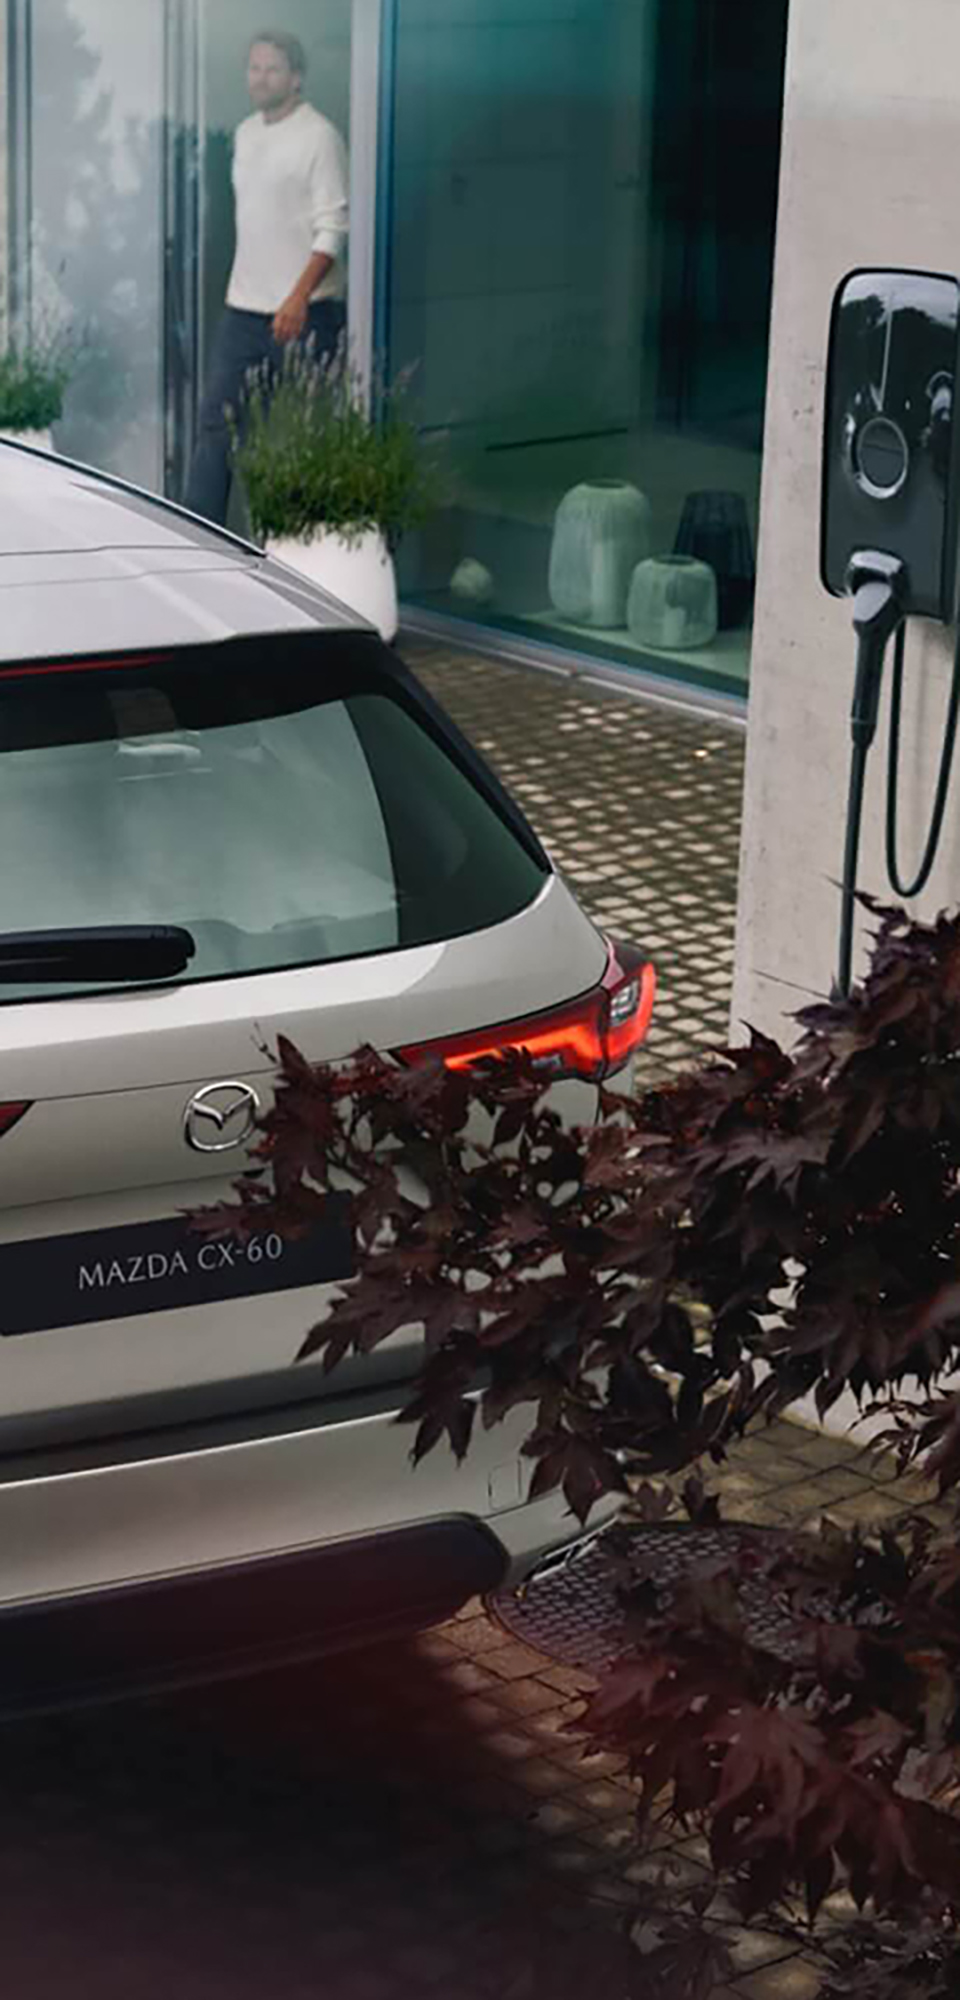 El nuevo SUV híbrido enchufable Mazda CX-60 aparcado junto a un conector para carga en el hogar.